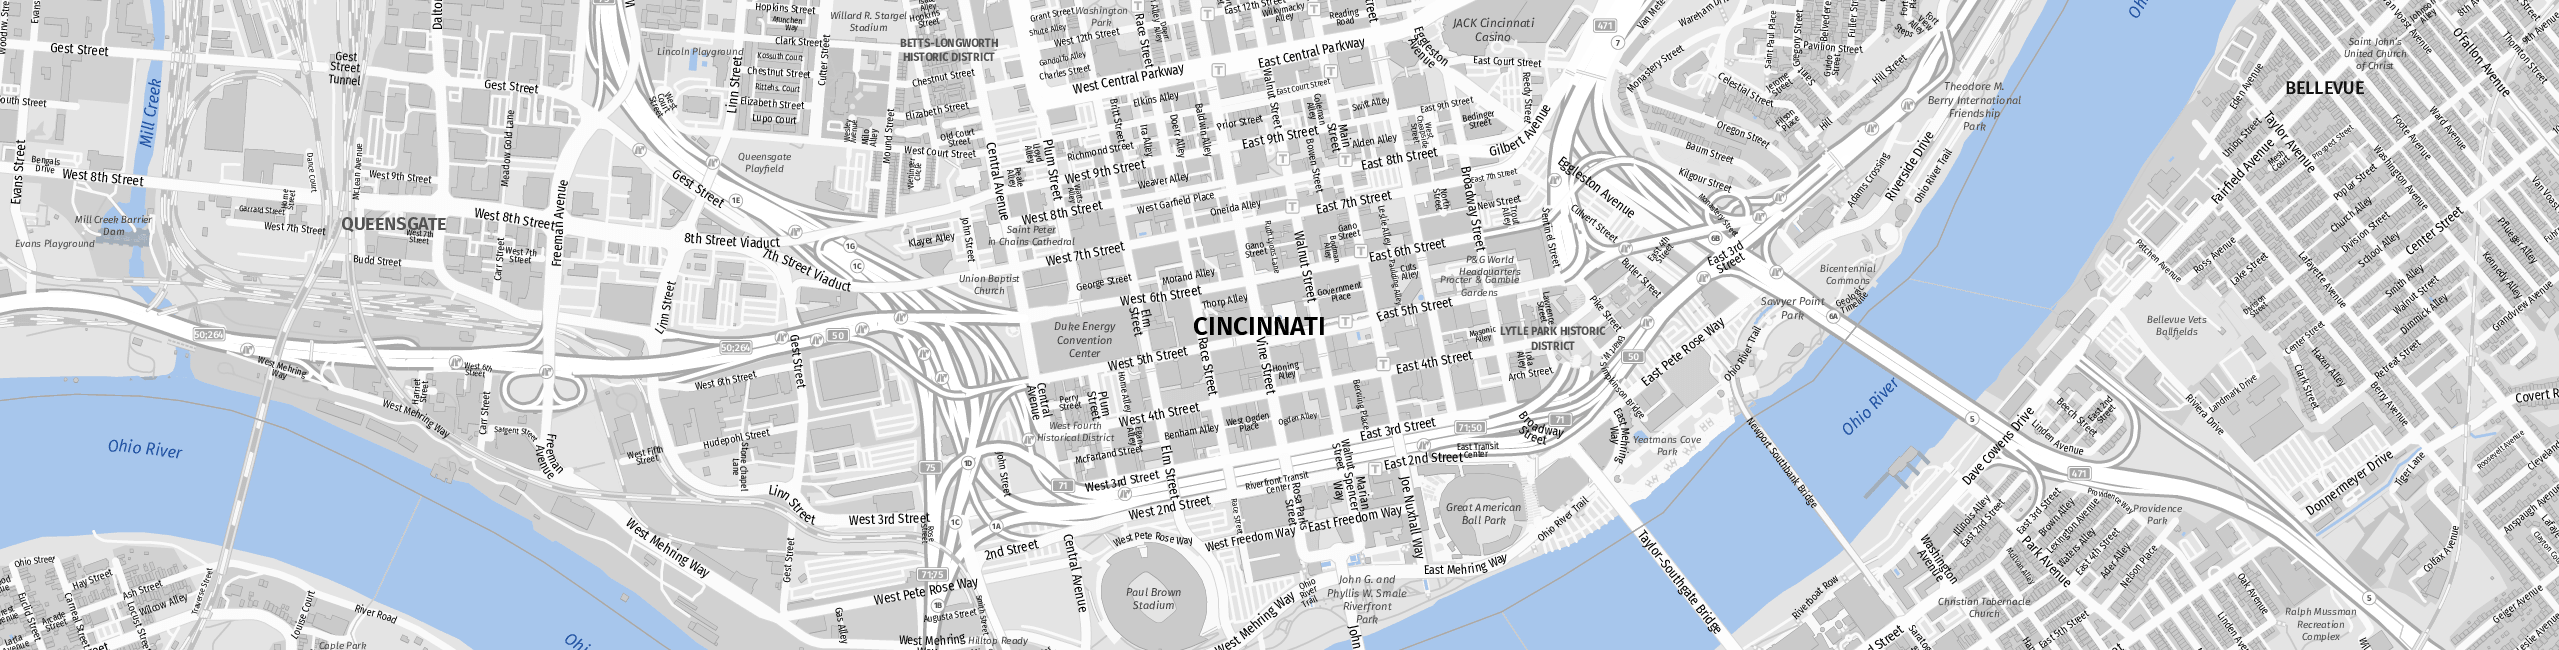 Stadtplan Cincinnati zum Downloaden.